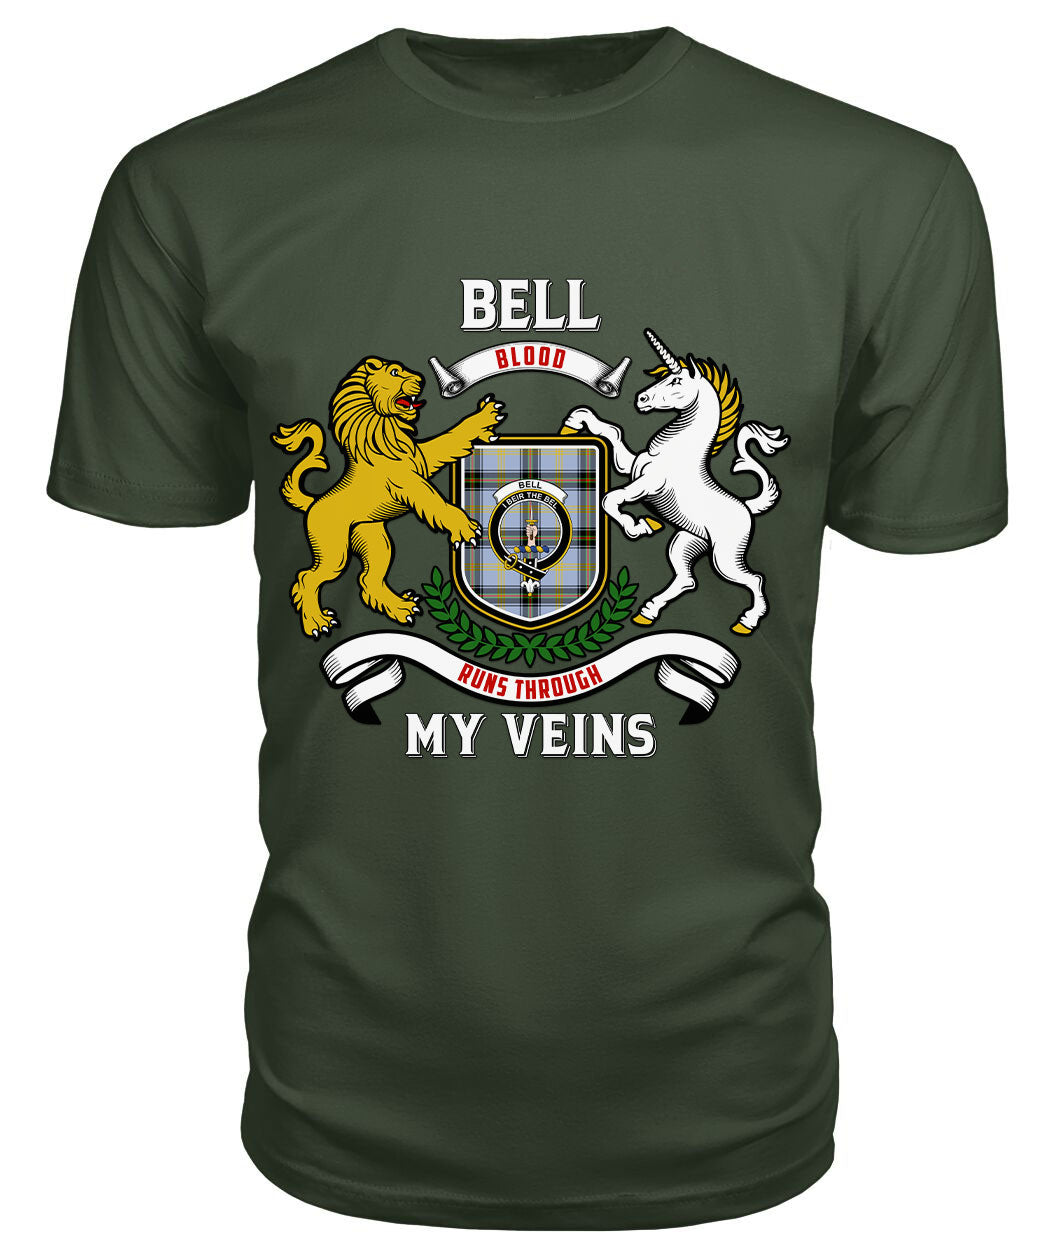 Bell of the Borders Tartan Crest 2D T-shirt - Blood Runs Through My Veins Style